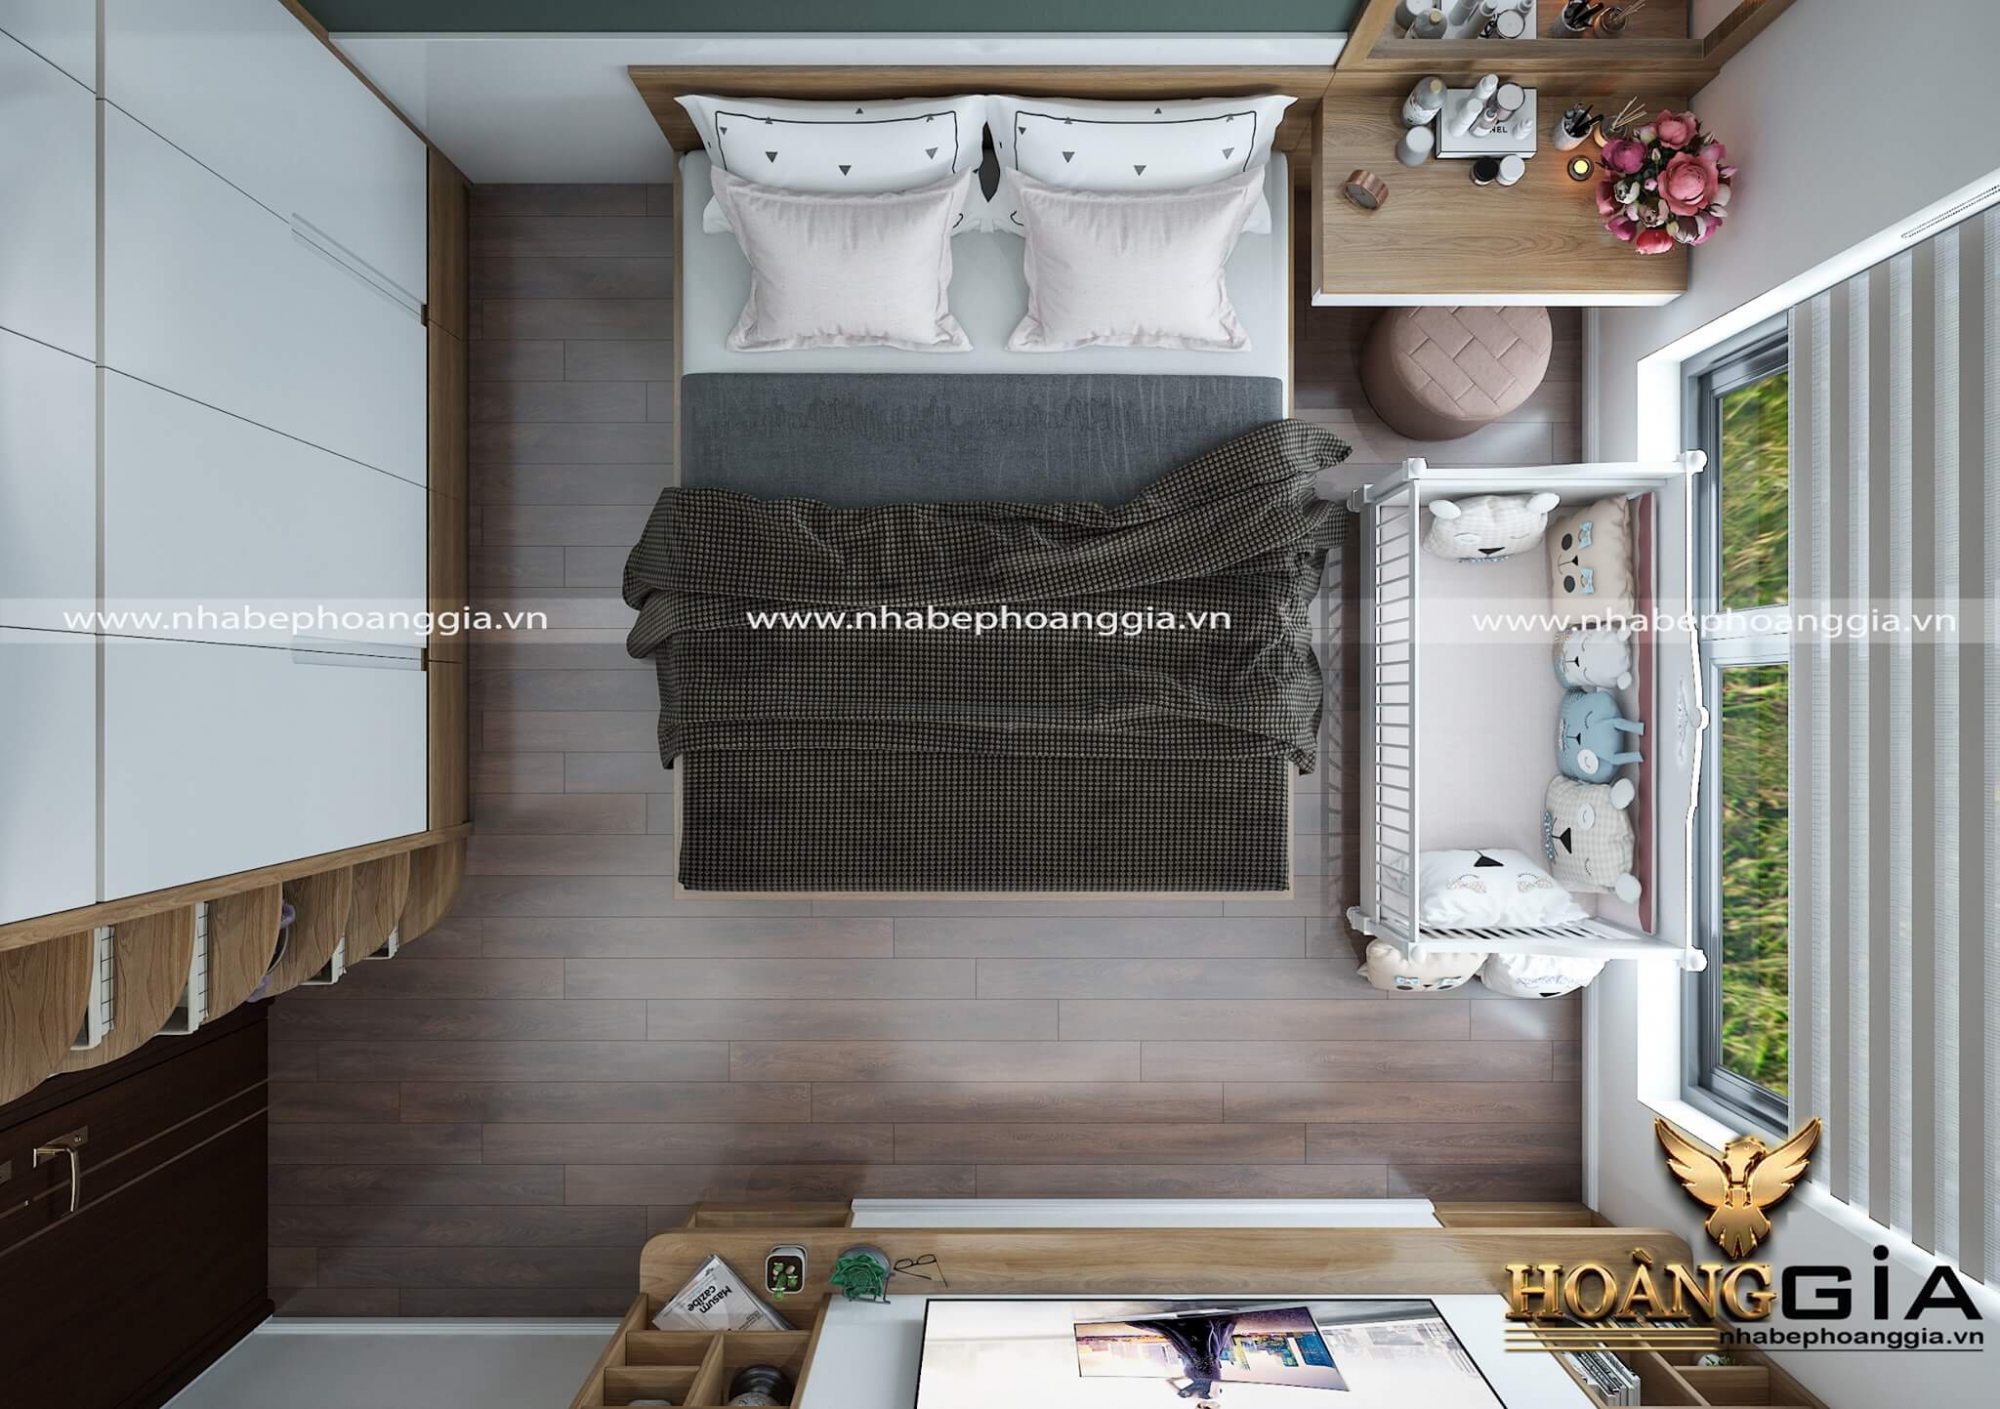 Phòng ngủ chung cư theo phong cách hiện đại